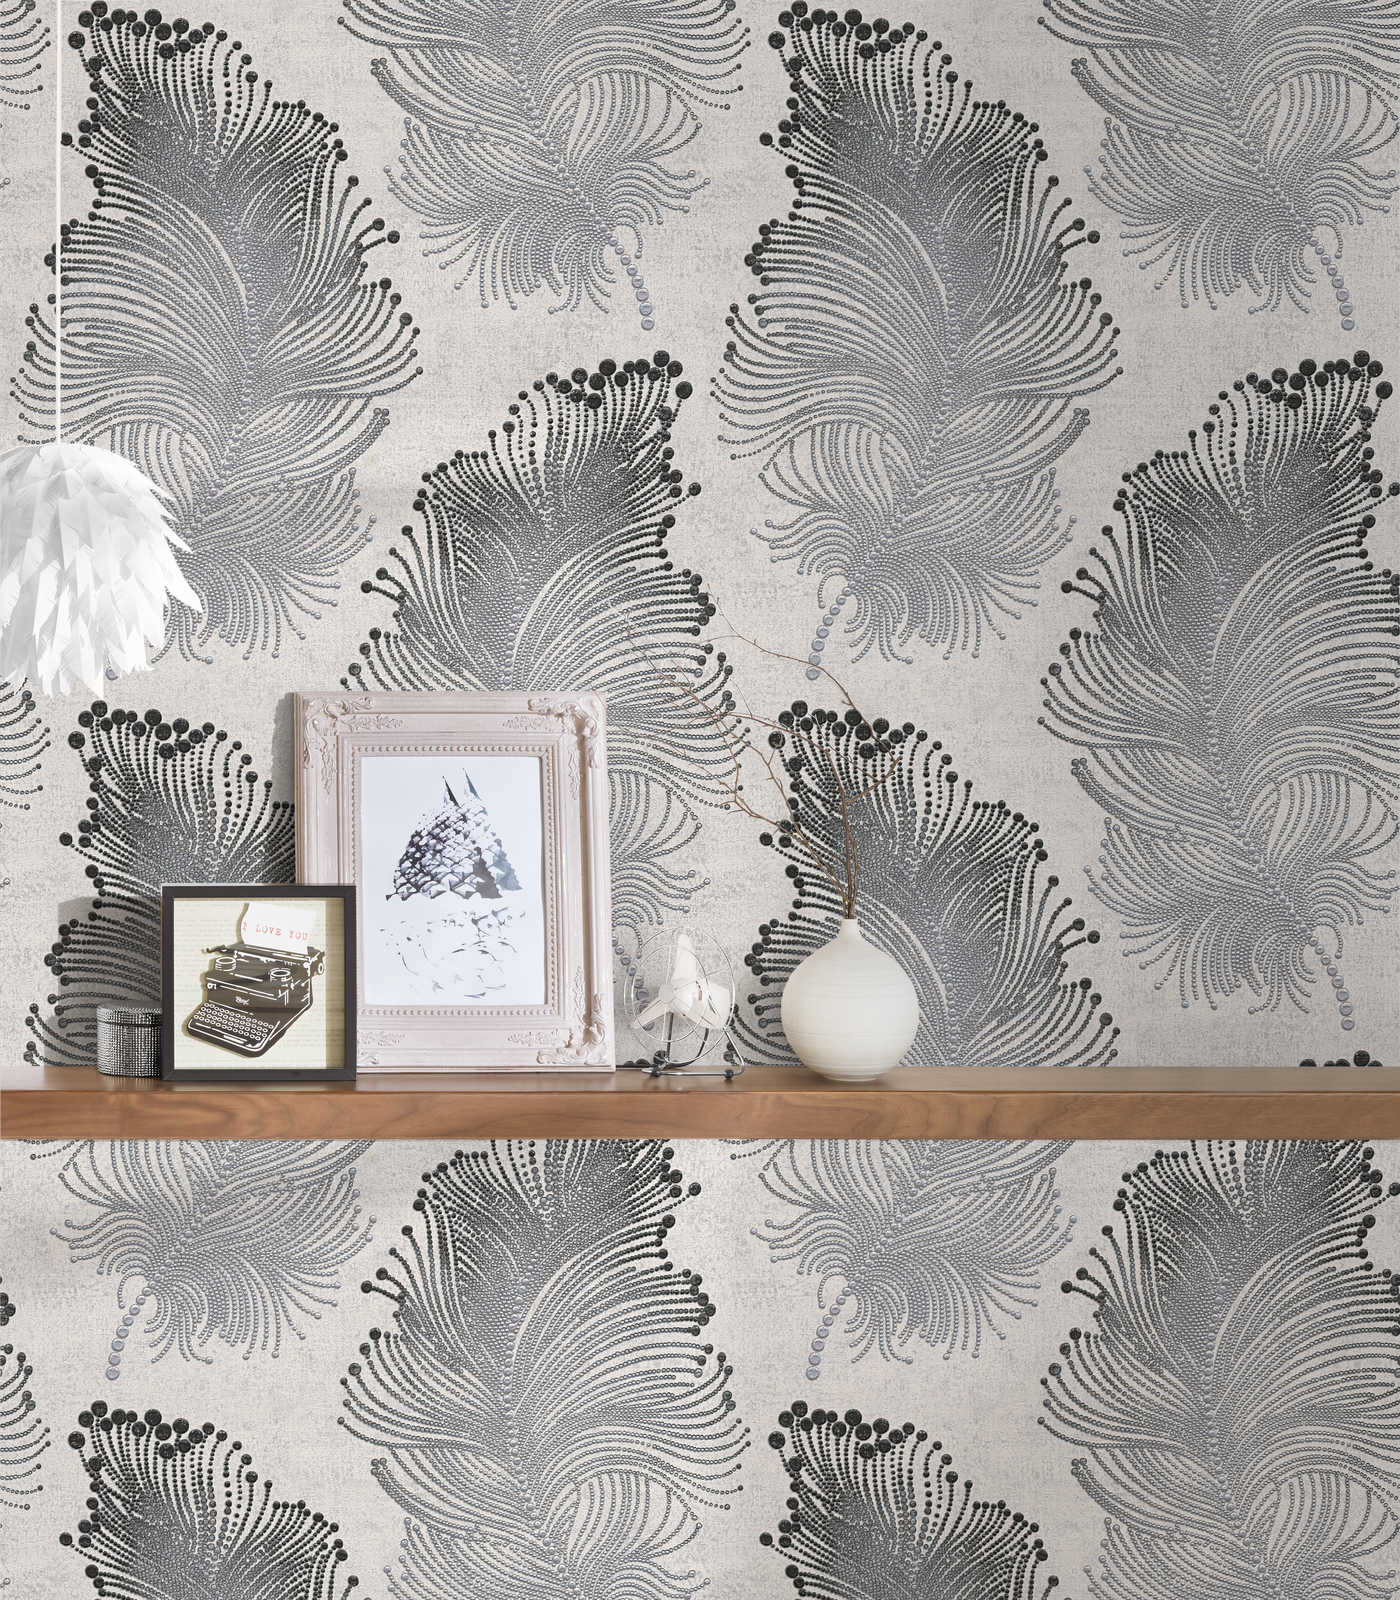             Metallic wallpaper with feather motif in boho style - metallic, white
        